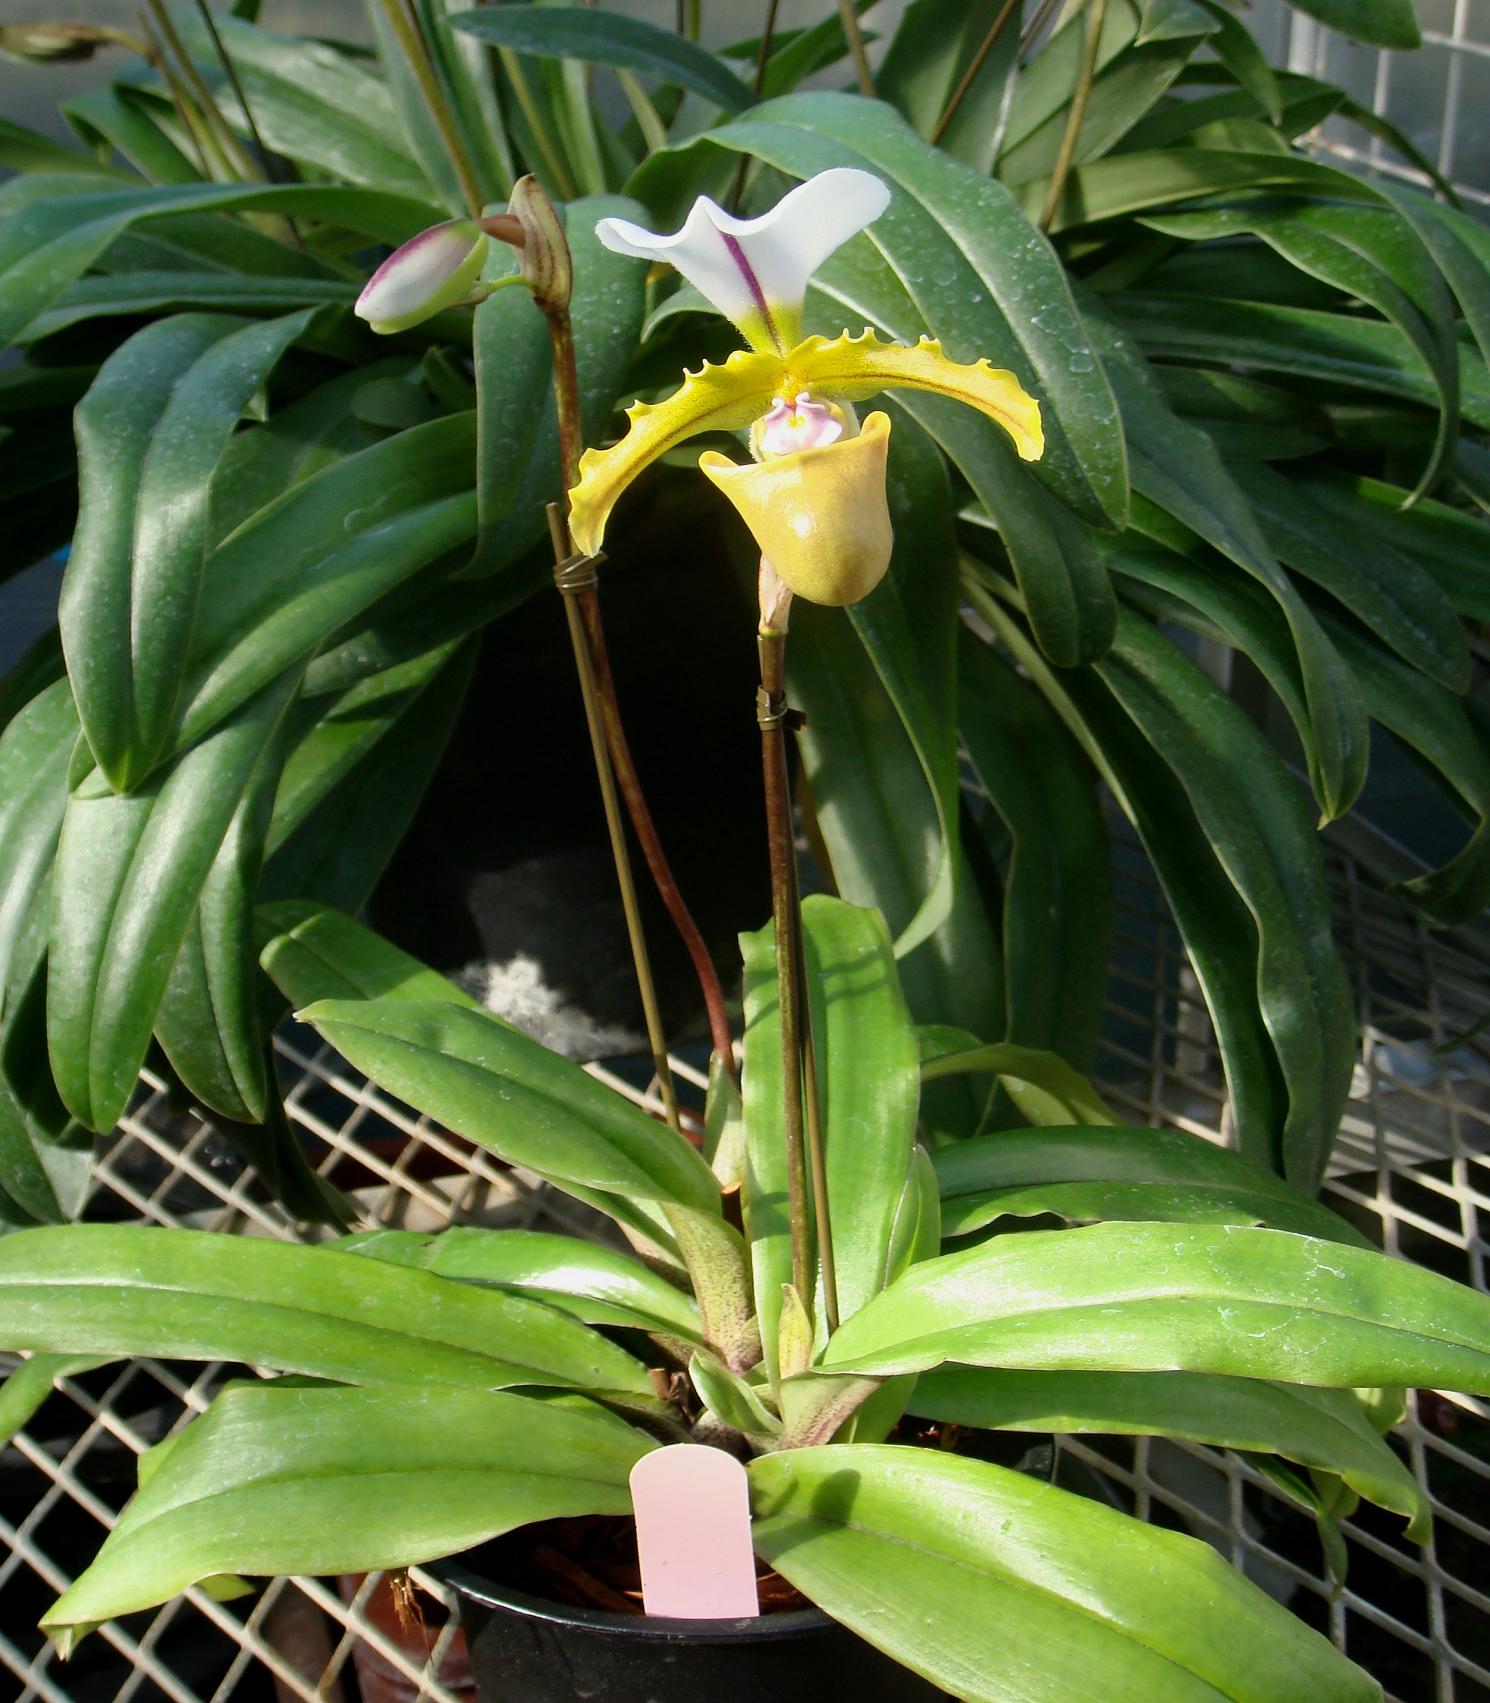 http://orchids.la.coocan.jp/Paphiopedilum/Paphiopedilum%20spicerianum/DSC05855.JPG